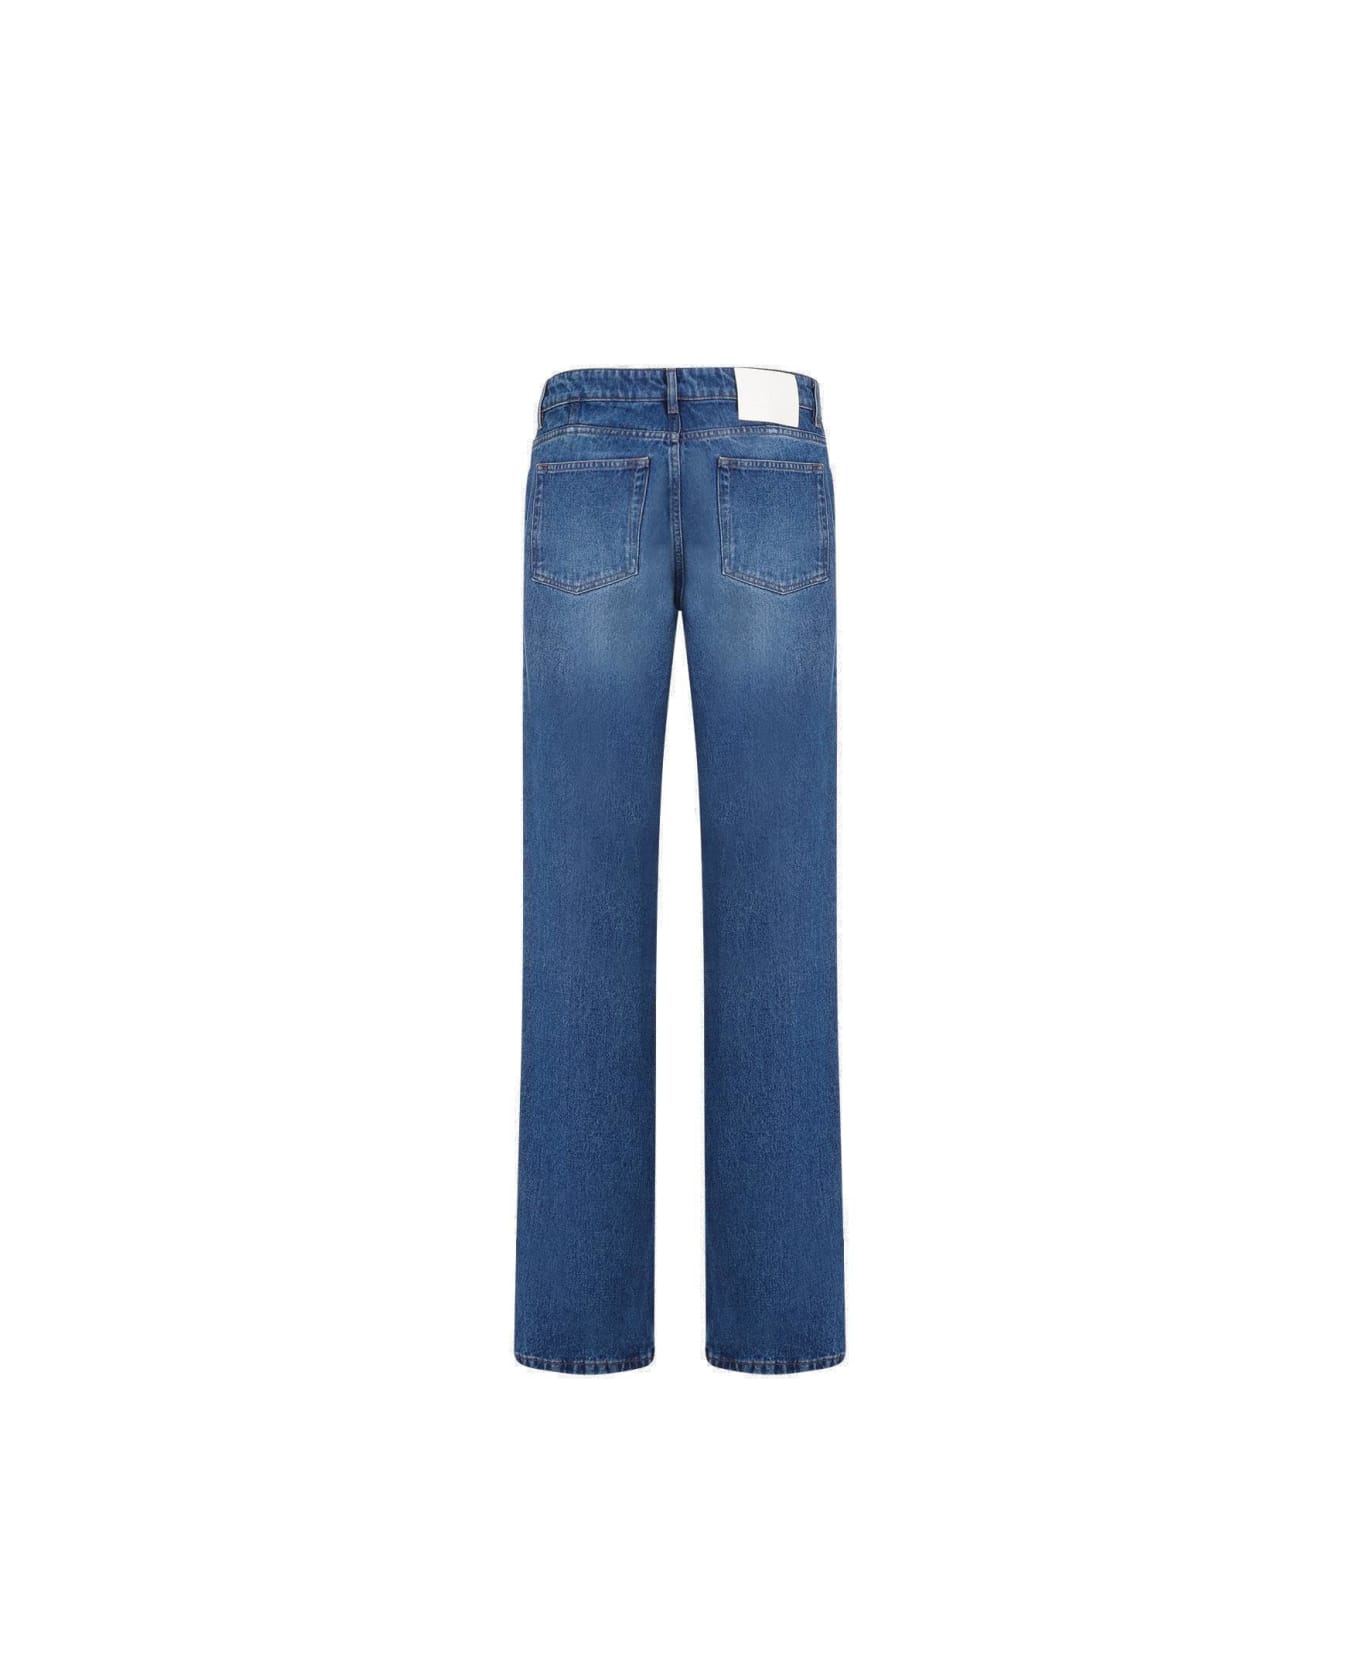 Ami Alexandre Mattiussi Paris Logo Patch Classic Fit Jeans - Blue デニム